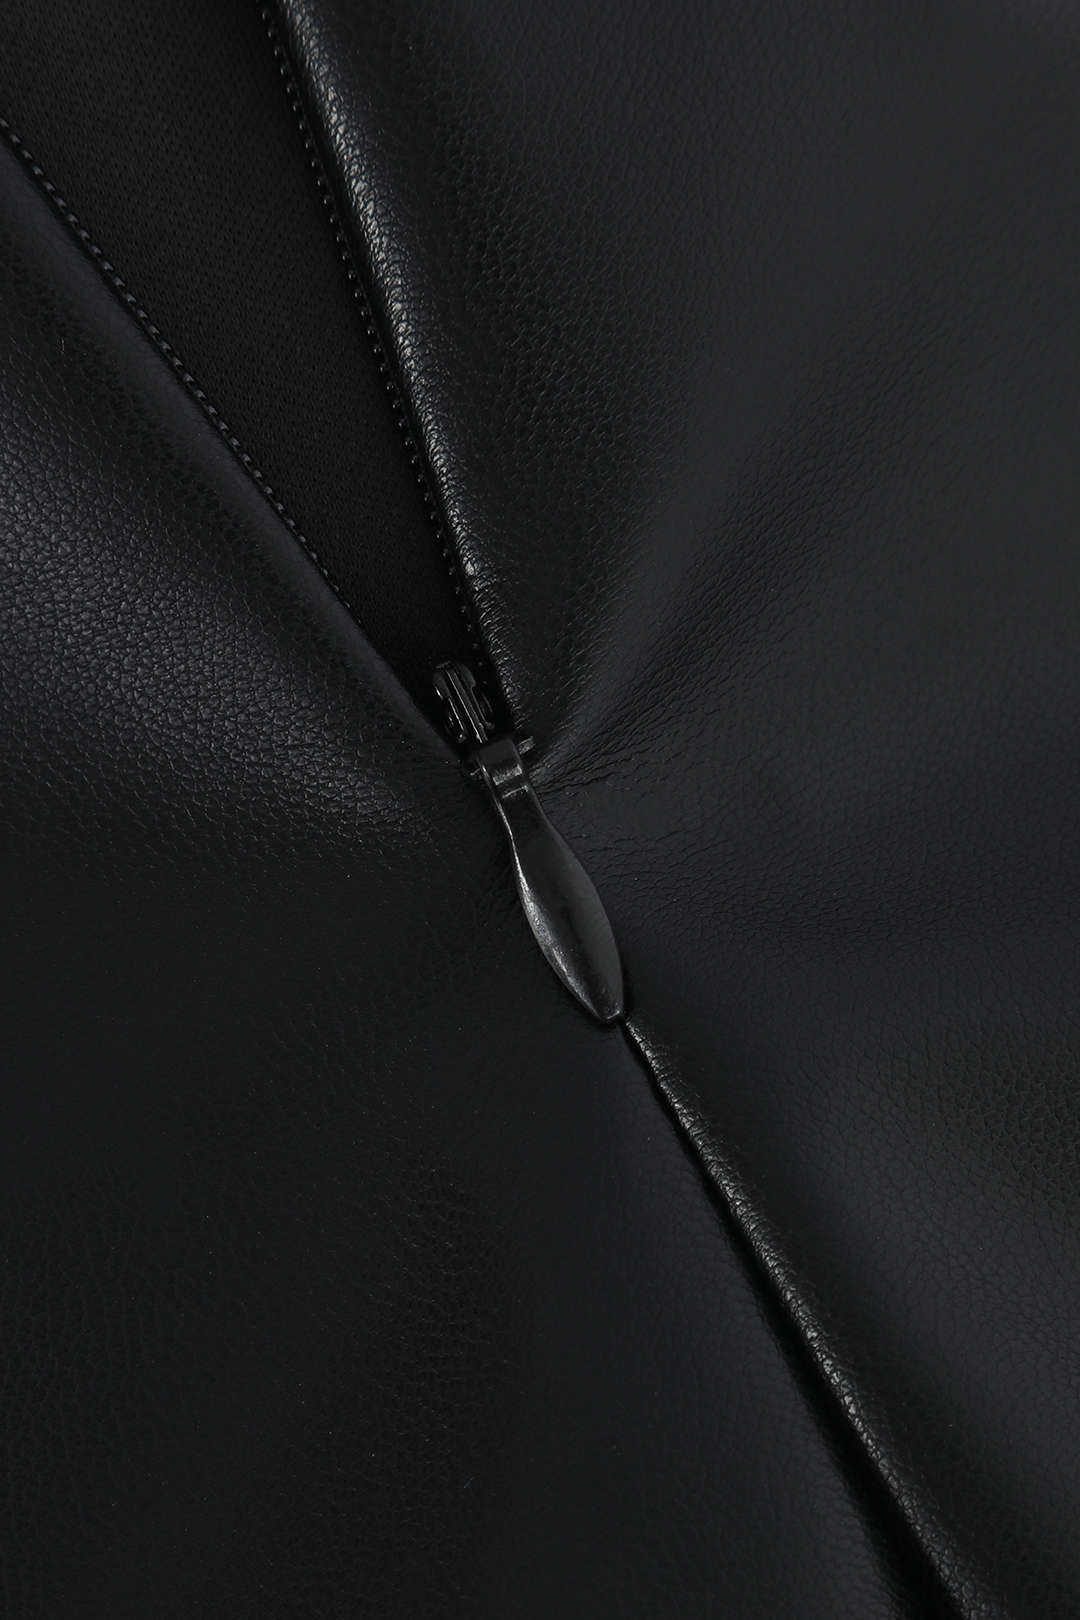 Faux Leather Twist Slit Midi Skirt